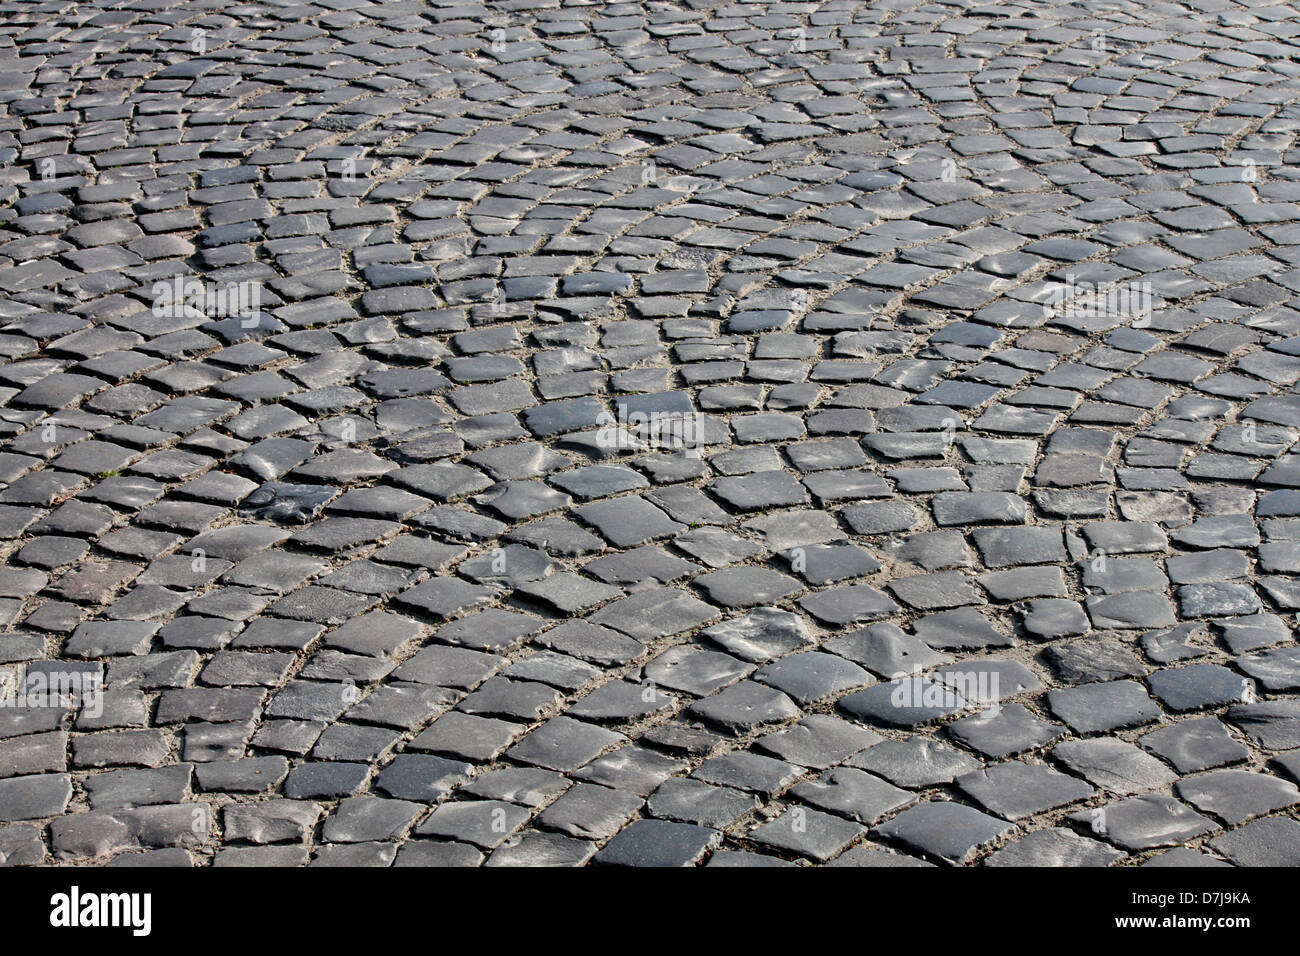 cobble stone road in Uzhgorod, Ukraine Stock Photo